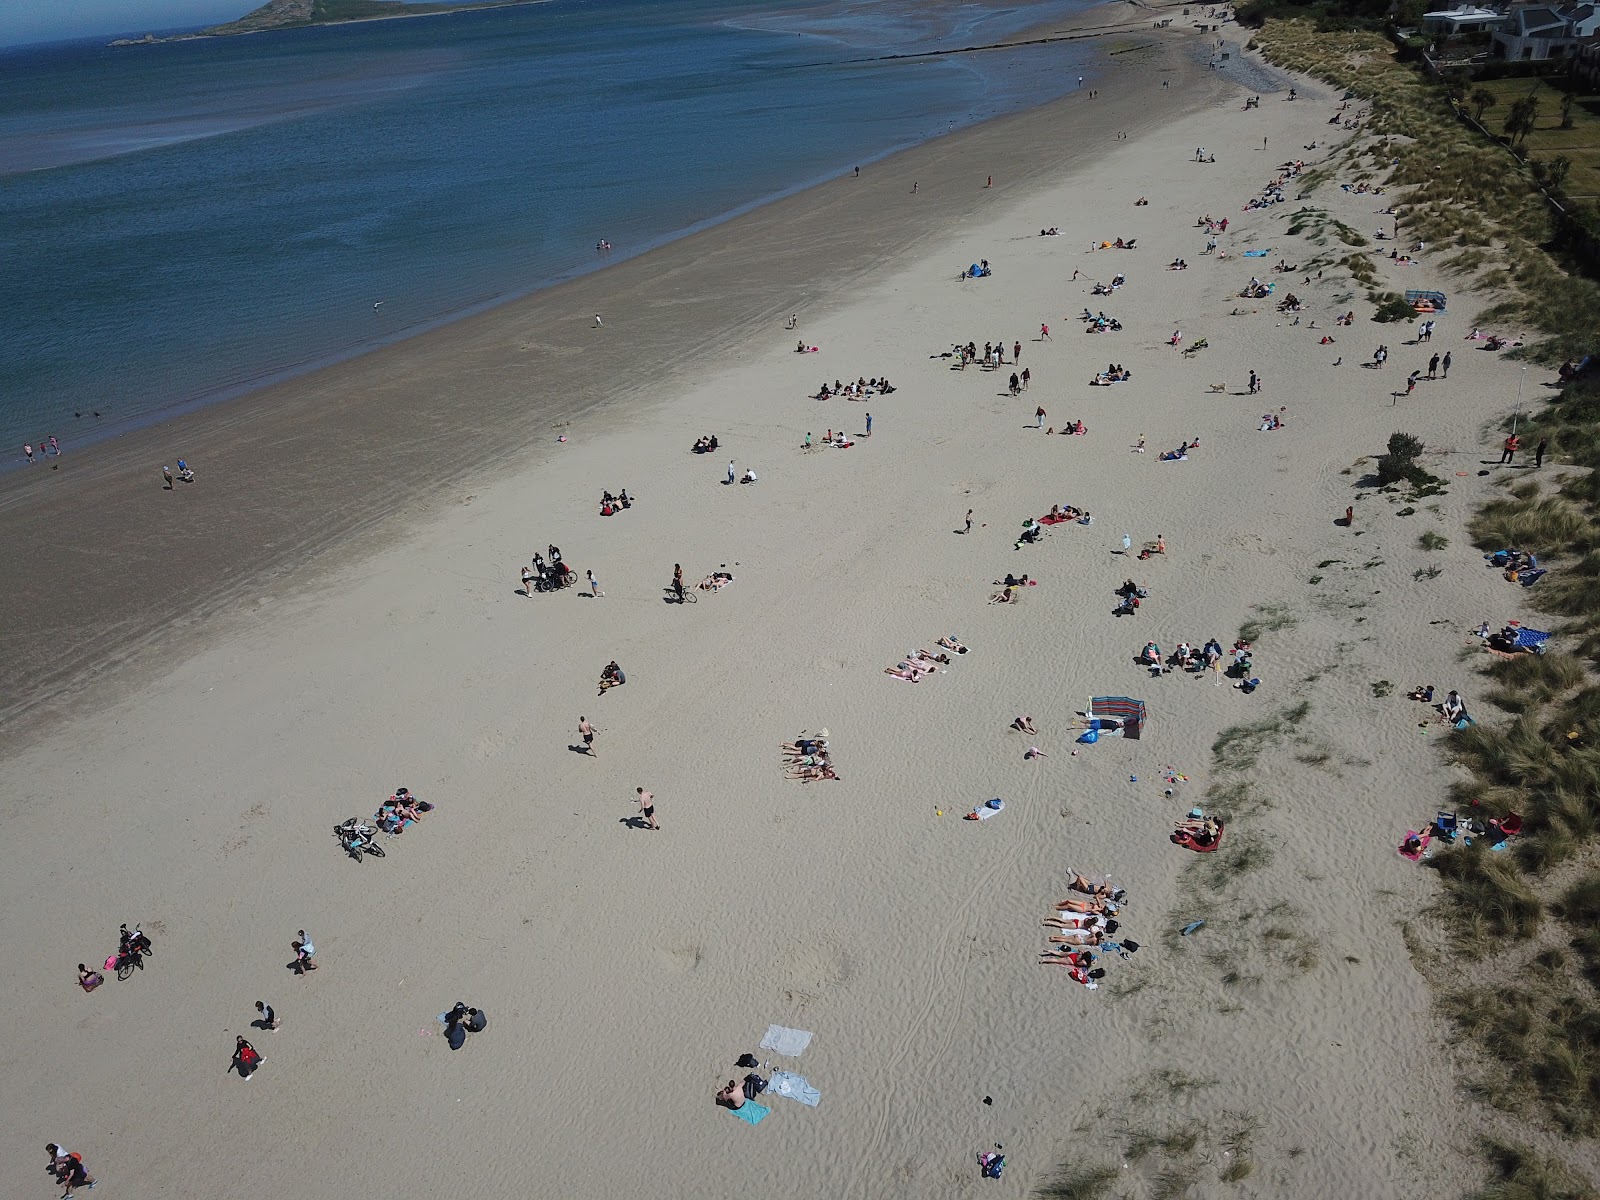 Zdjęcie Burrow beach z poziomem czystości głoska bezdźwięczna